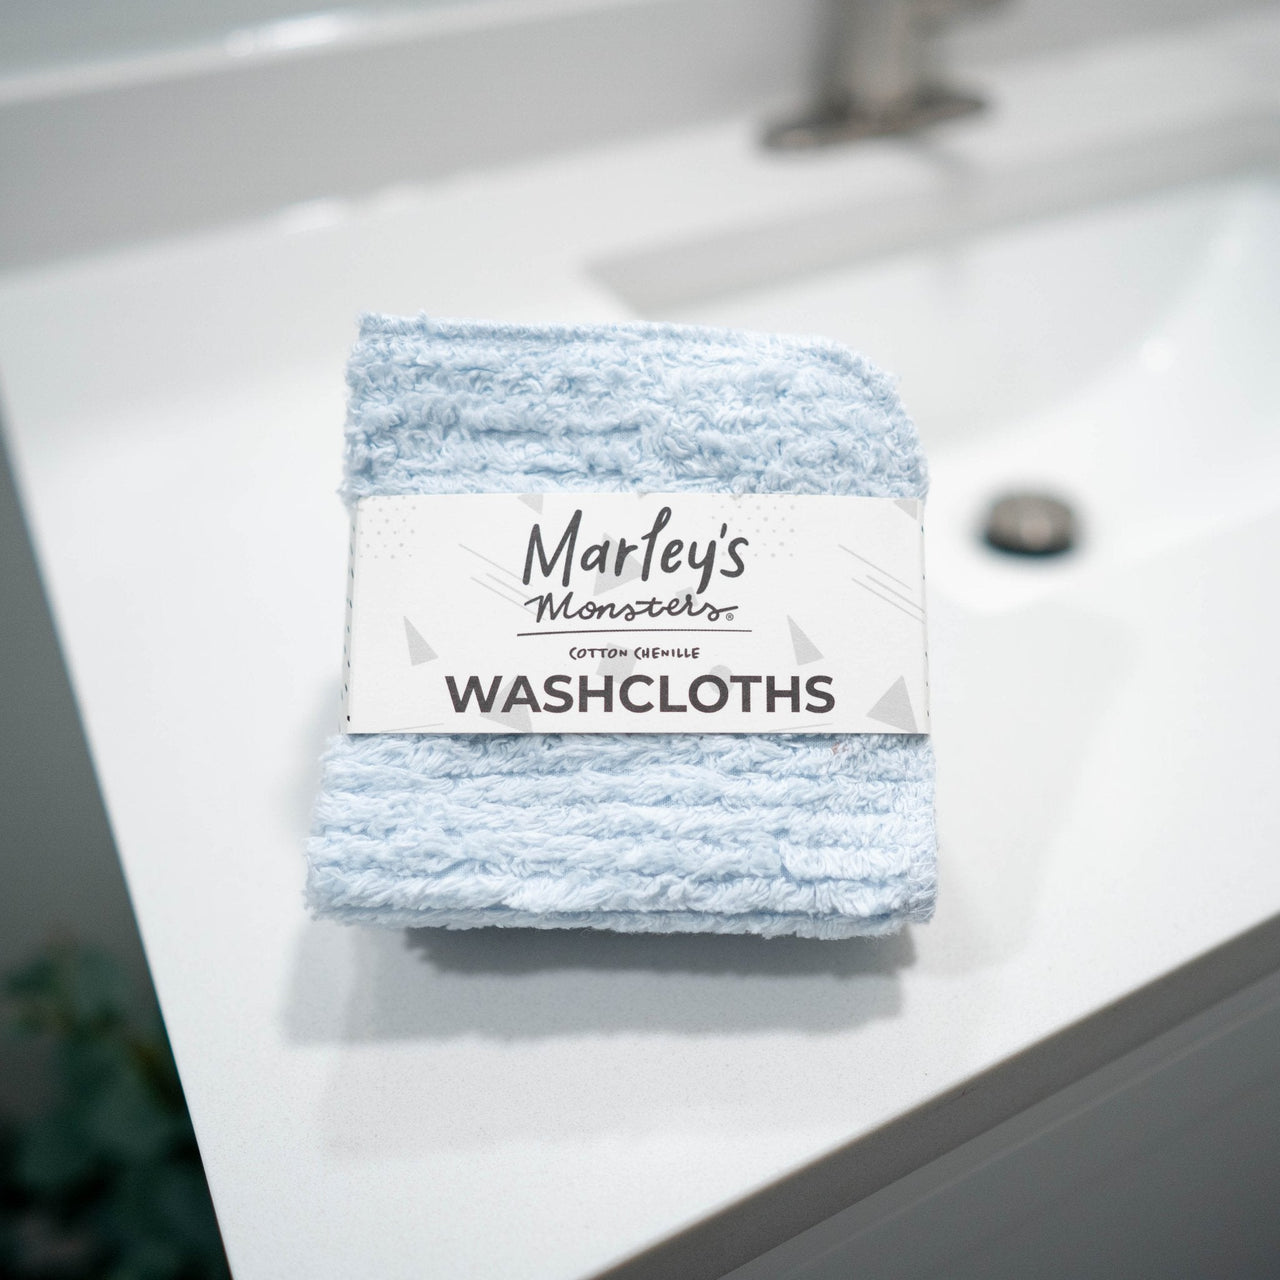 Washcloths: Cotton Chenille